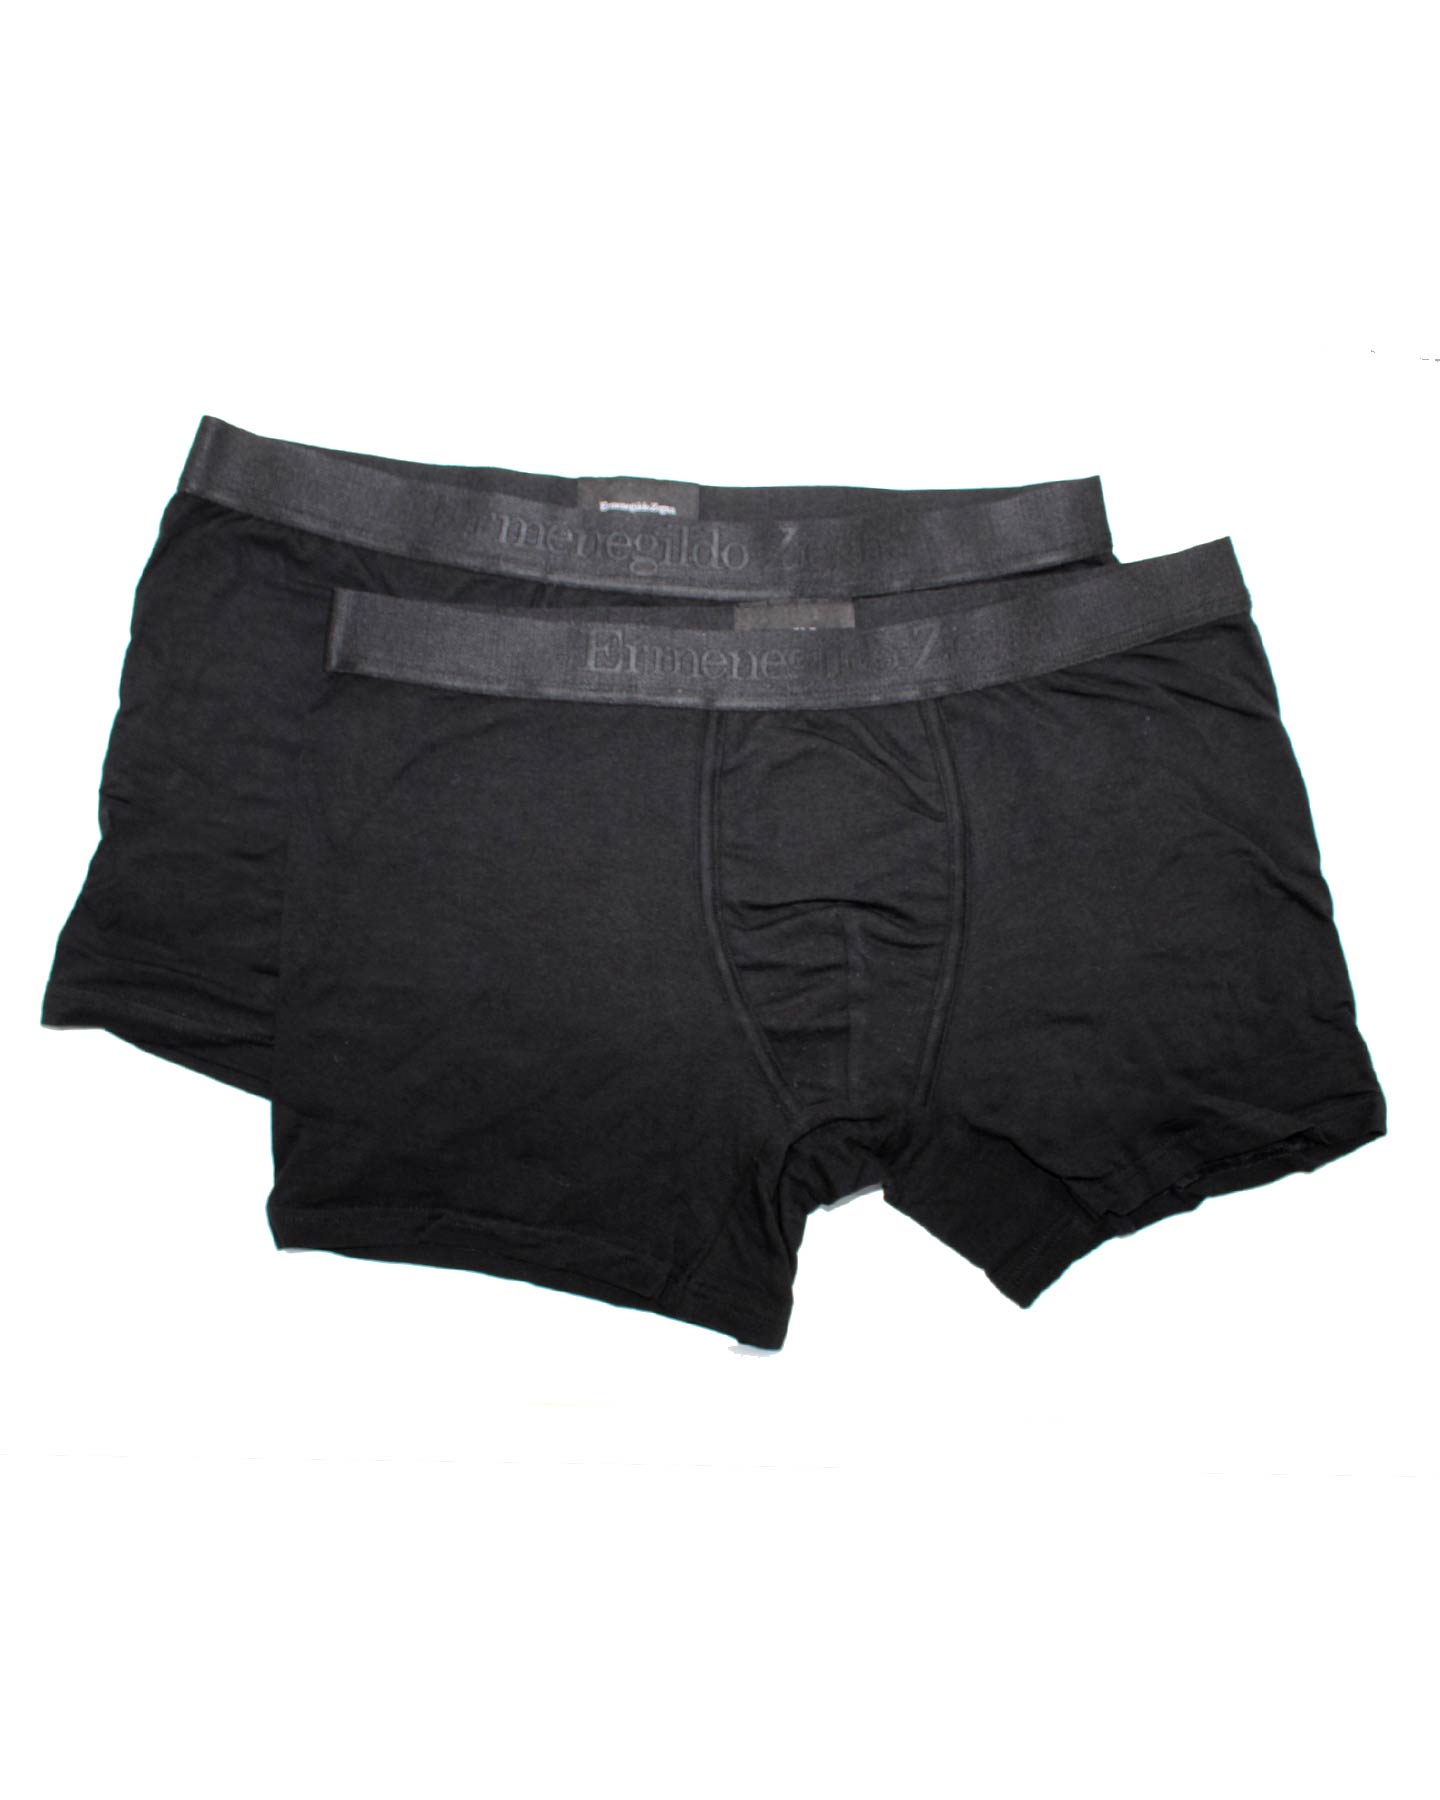 Ermenegildo Zegna Boxer Brief Black Men Underwear Stretch Cotton